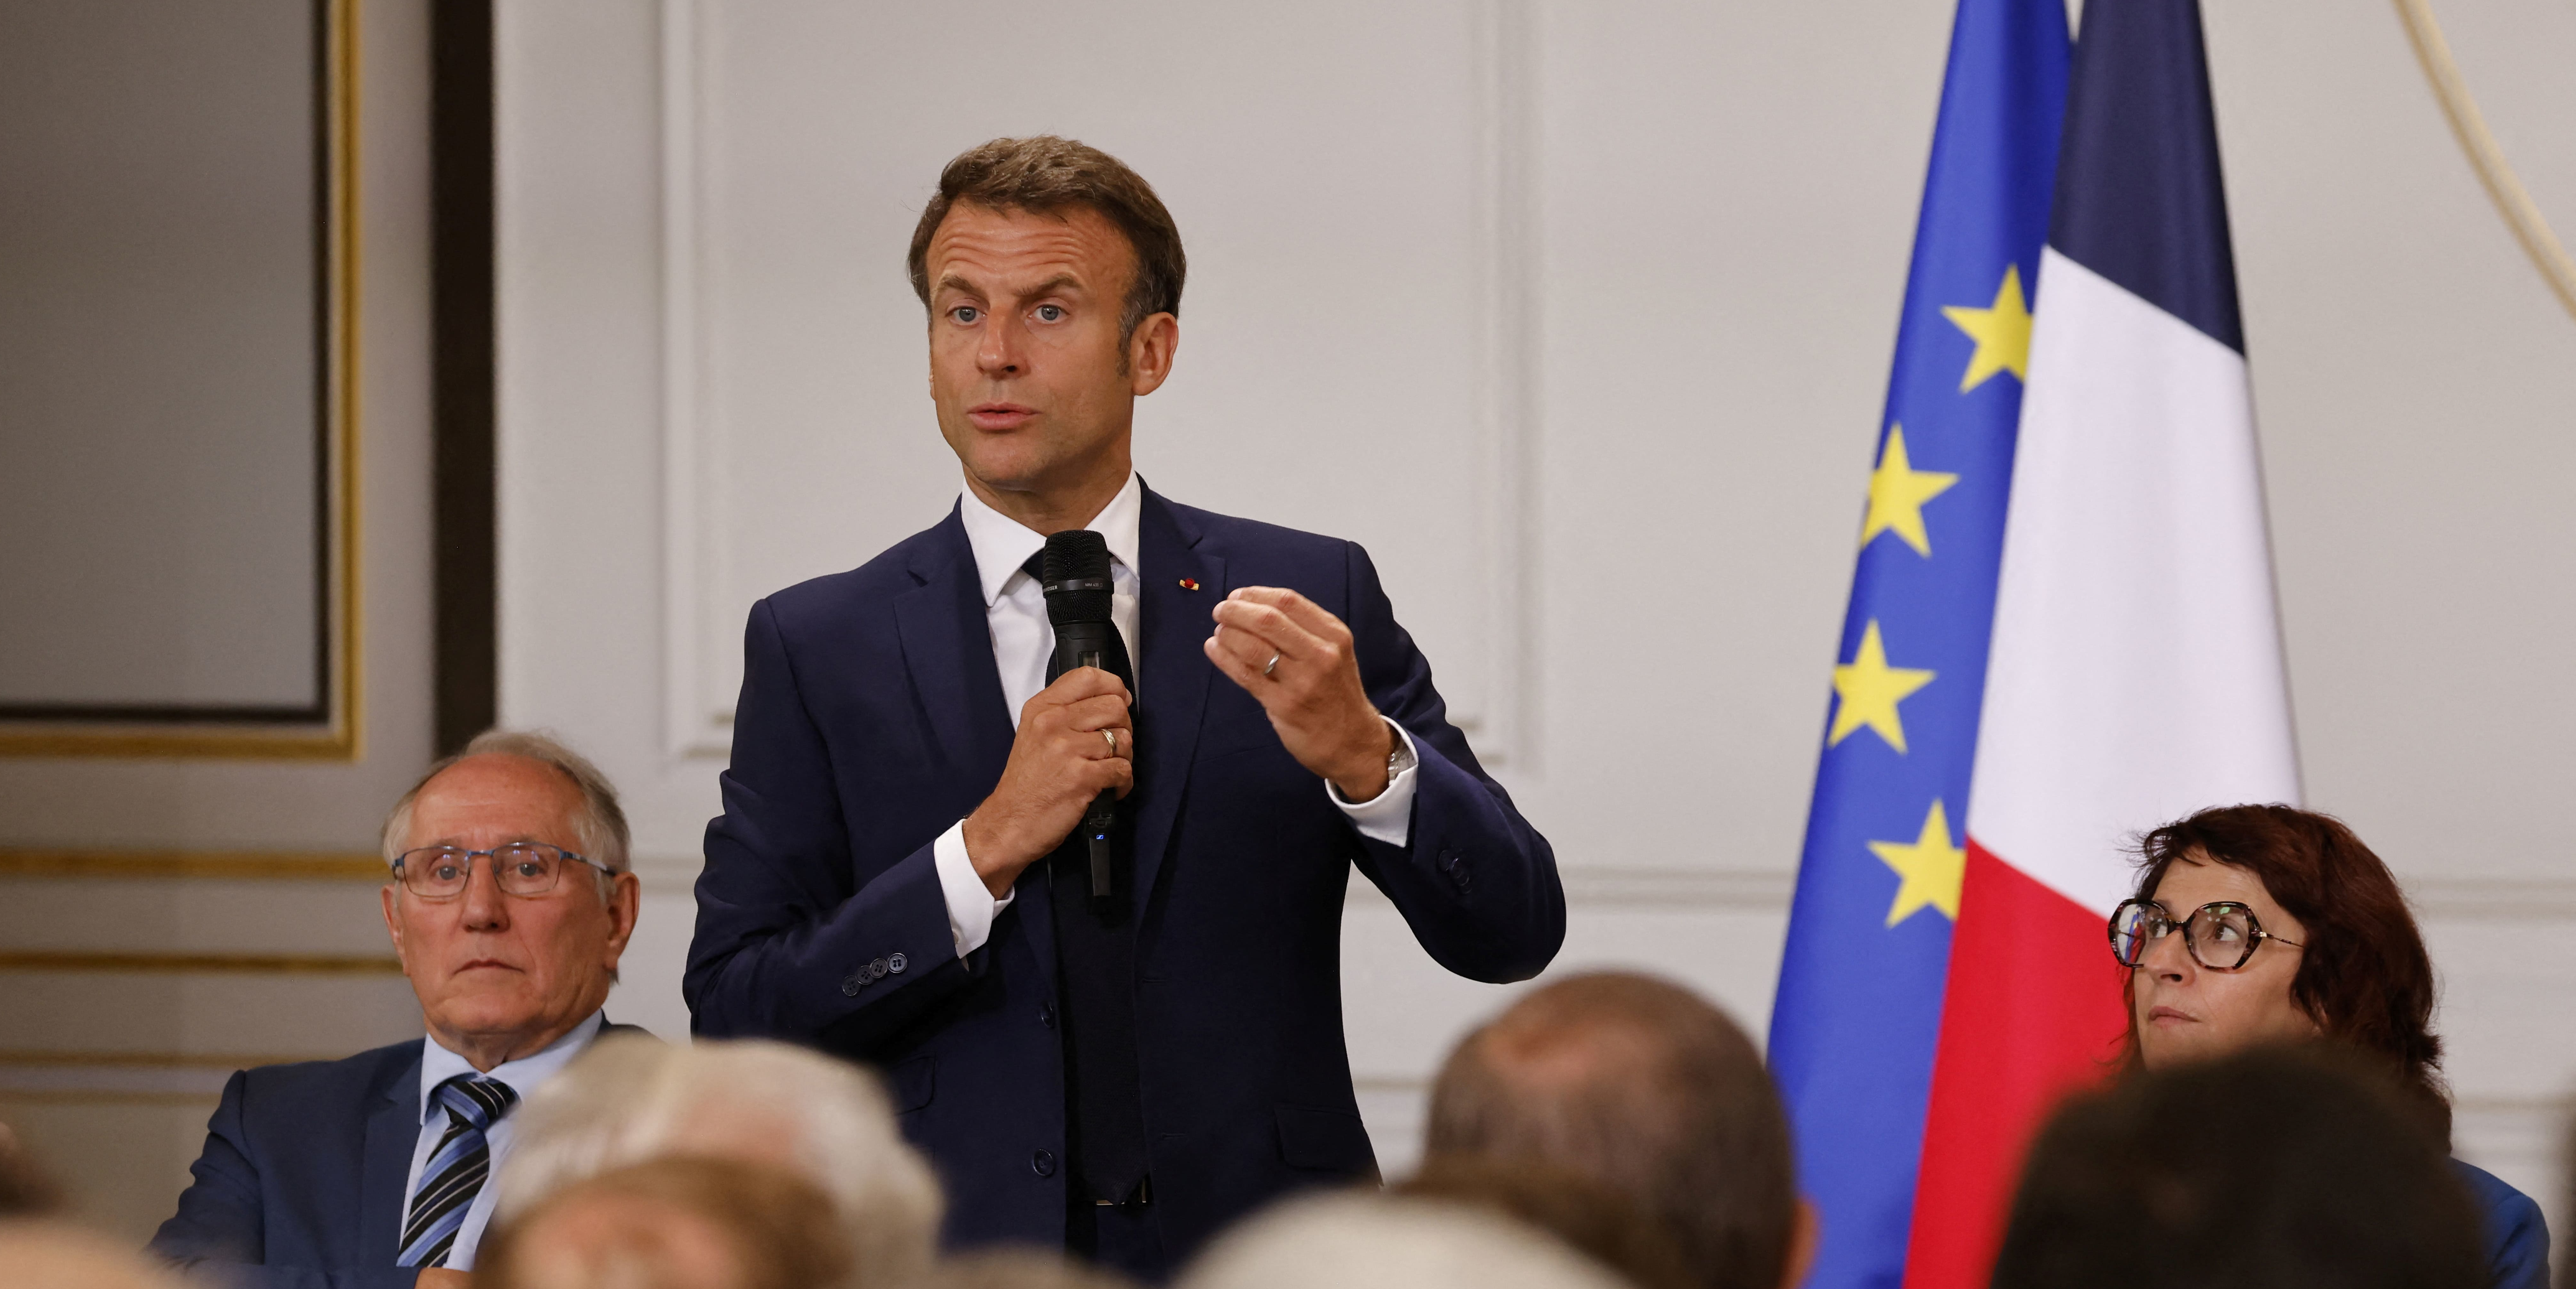 Emeutes : Macron et Borne déclenchent l'opération câlinothérapie auprès des maires et des députés